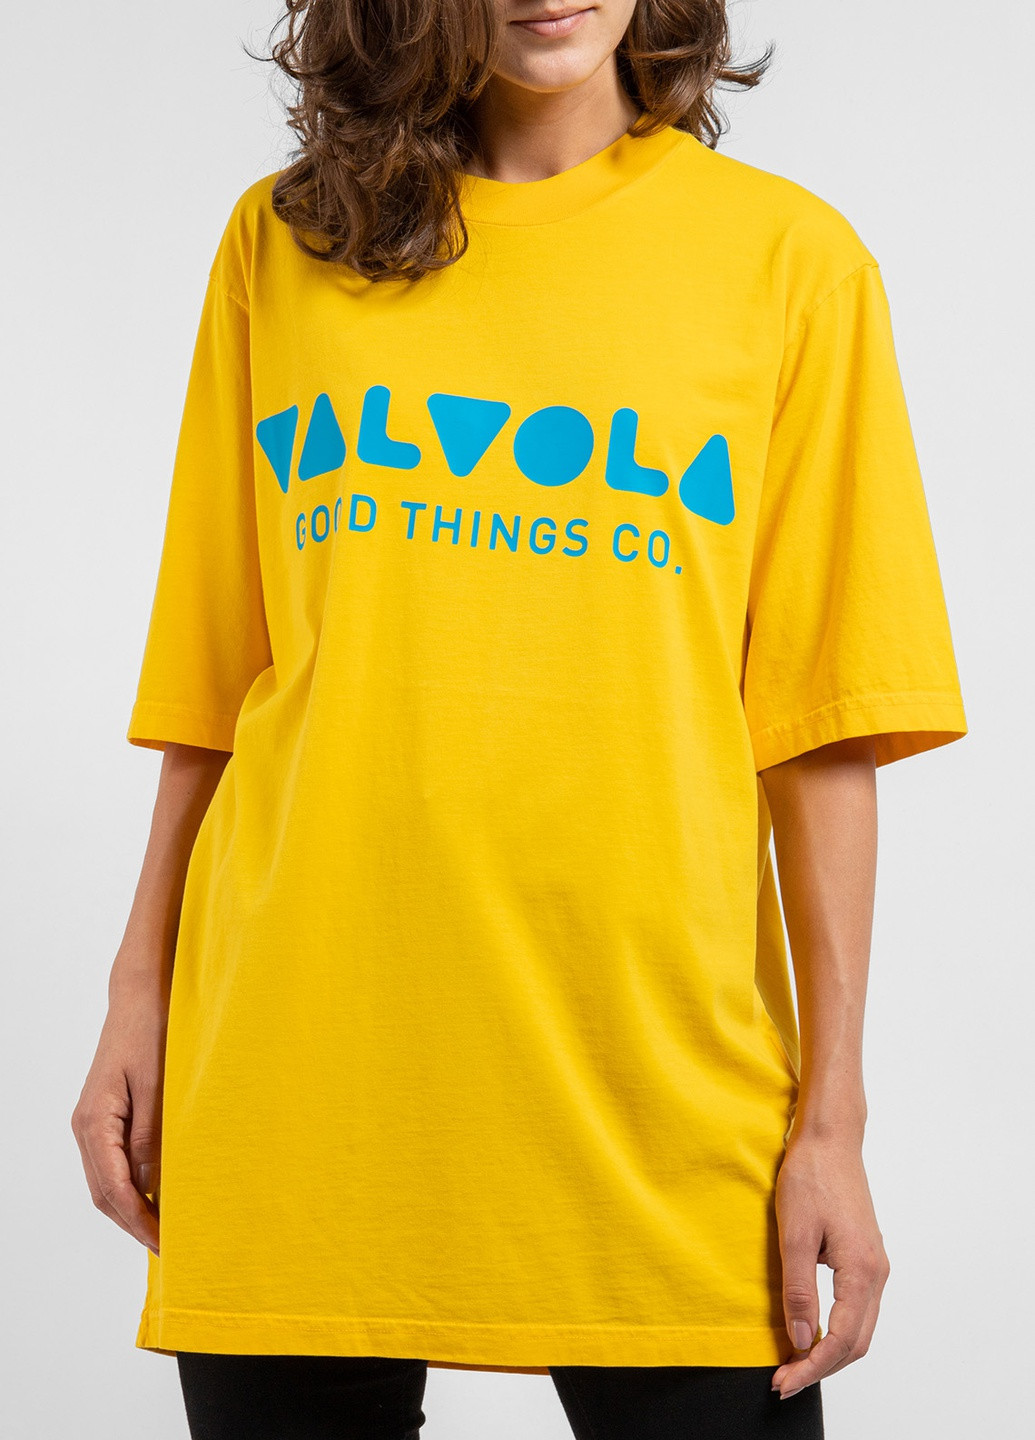 Желтая футболка с логотипом цвета морской волны Valvola